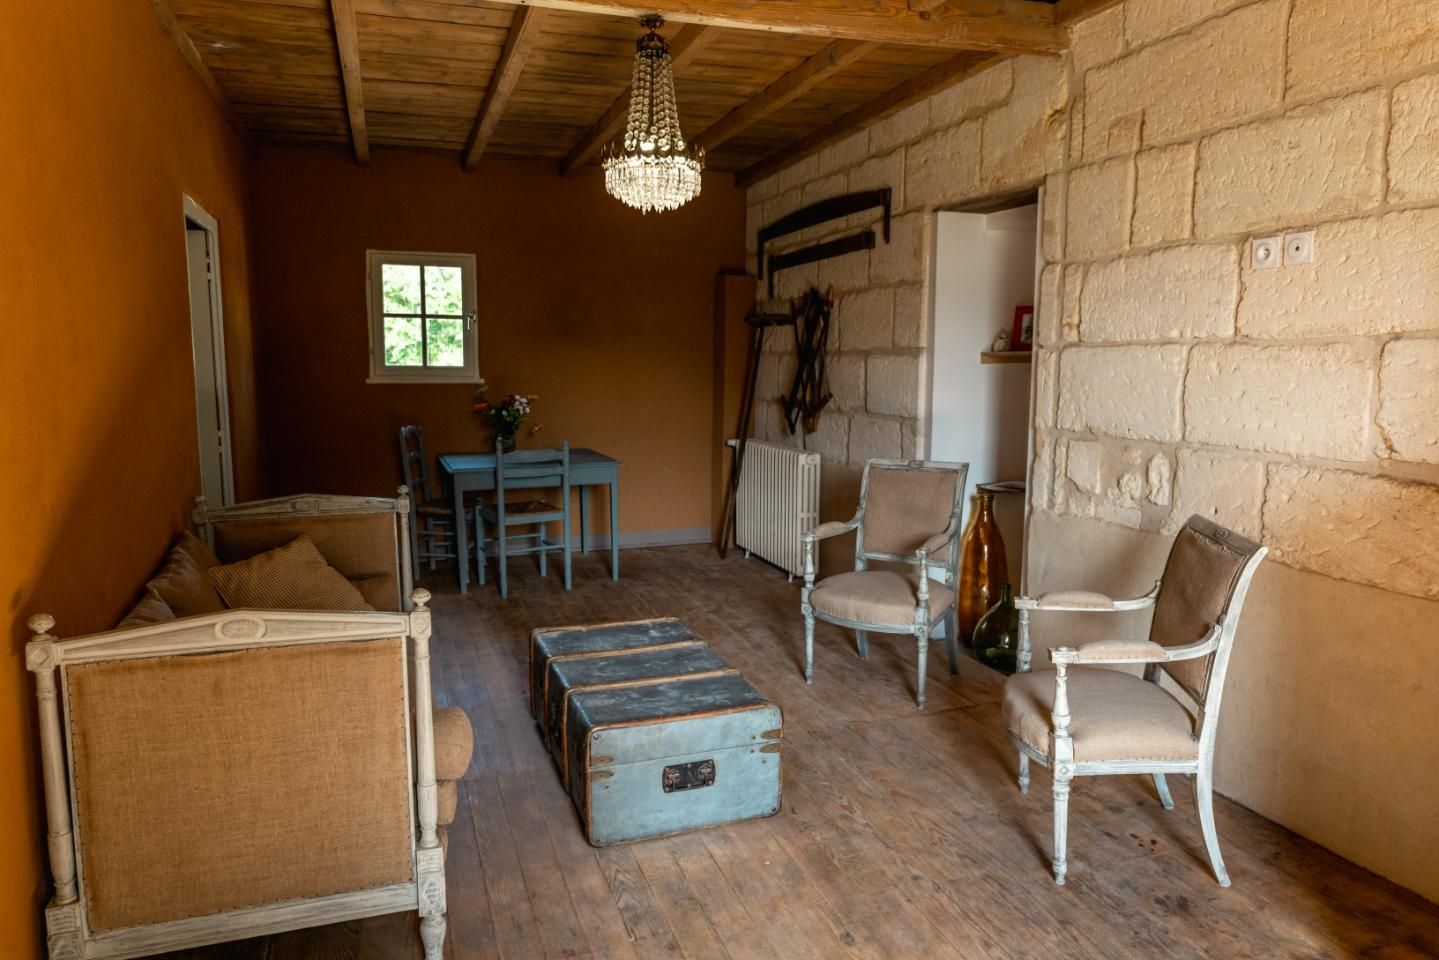 Hôte GreenGo: Suite Campagnarde près Bordeaux au Chateau CamponacChâteau camponac - Image 18